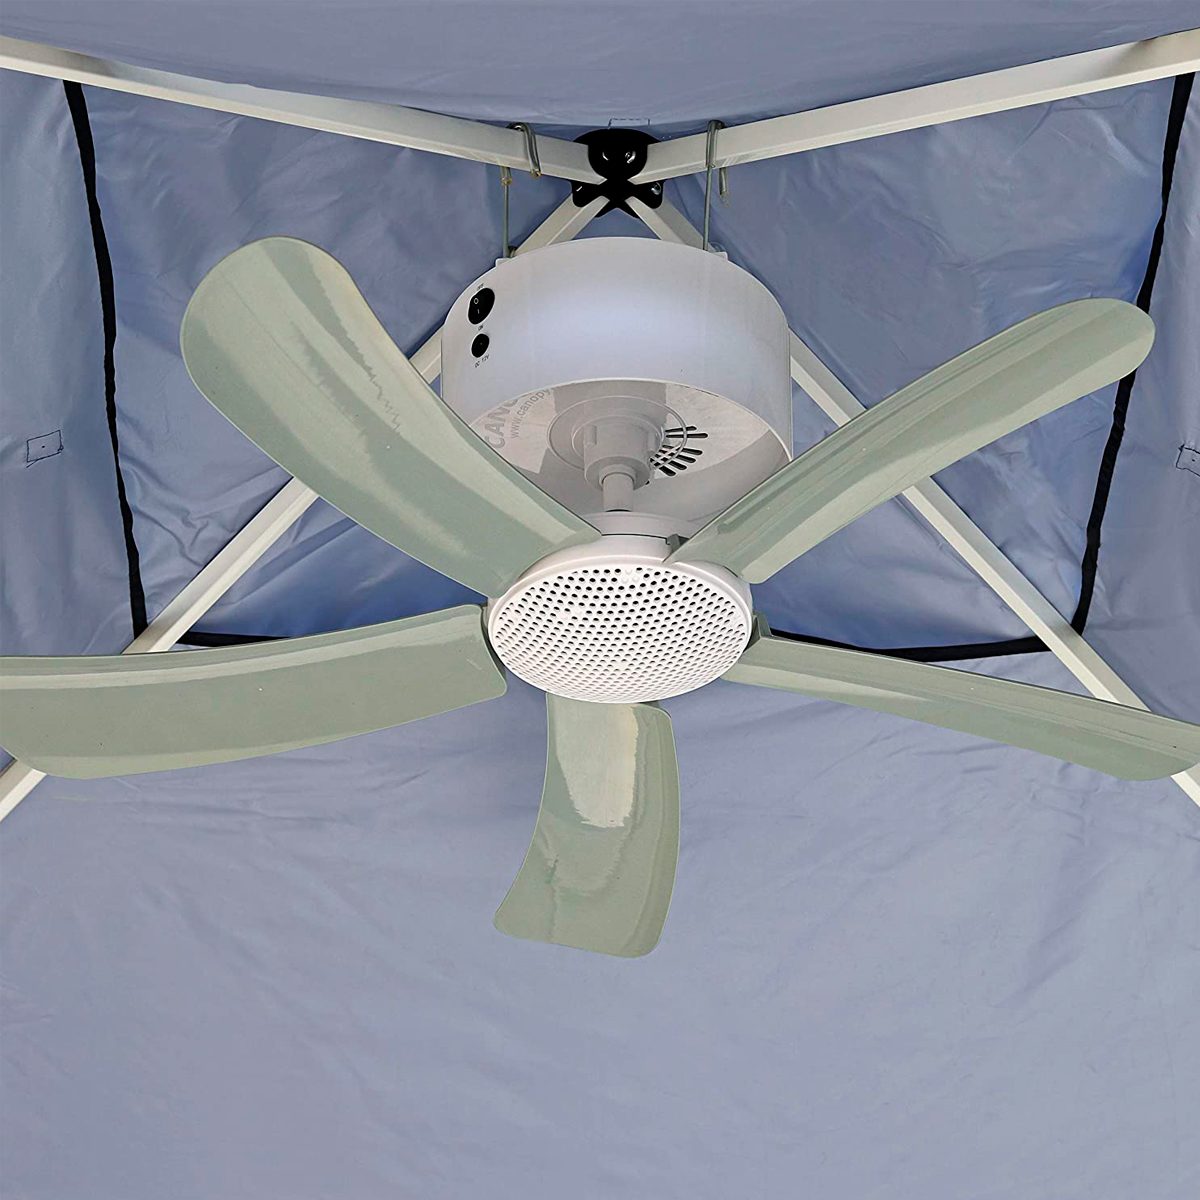 https://www.familyhandyman.com/wp-content/uploads/2022/04/Canopy-Breeze-Canopy-Fan-Rechargeable-Ceiling-Fan-ecomm-amazon.com_.jpg?fit=700%2C700